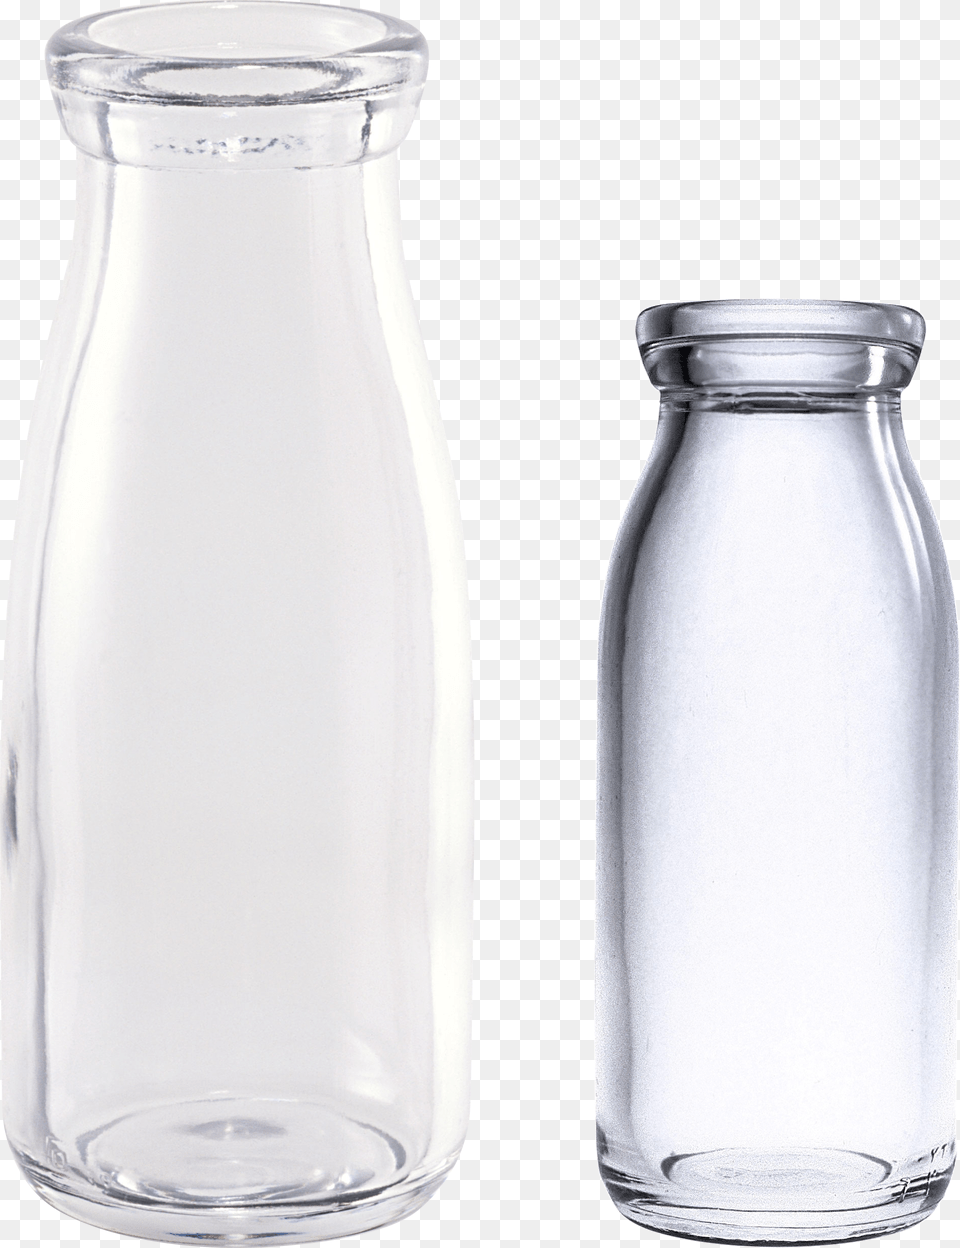 Empty Glass Bottles, Jar, Beverage, Milk, Bottle Free Transparent Png